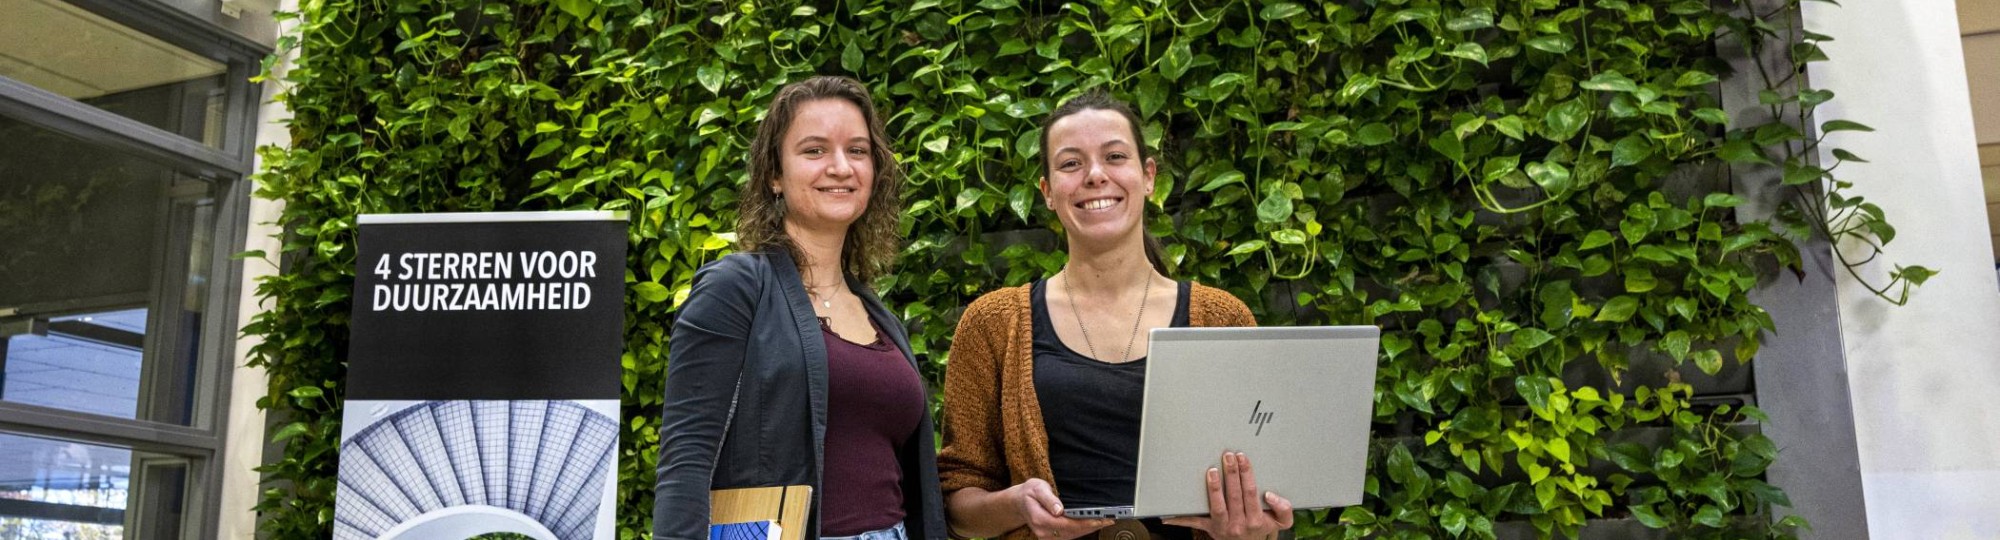 Afstudeerders Fiona Verbrugge (l) en Maaike Diks voor de inpandige groene wand bij HAN Bouwkunde